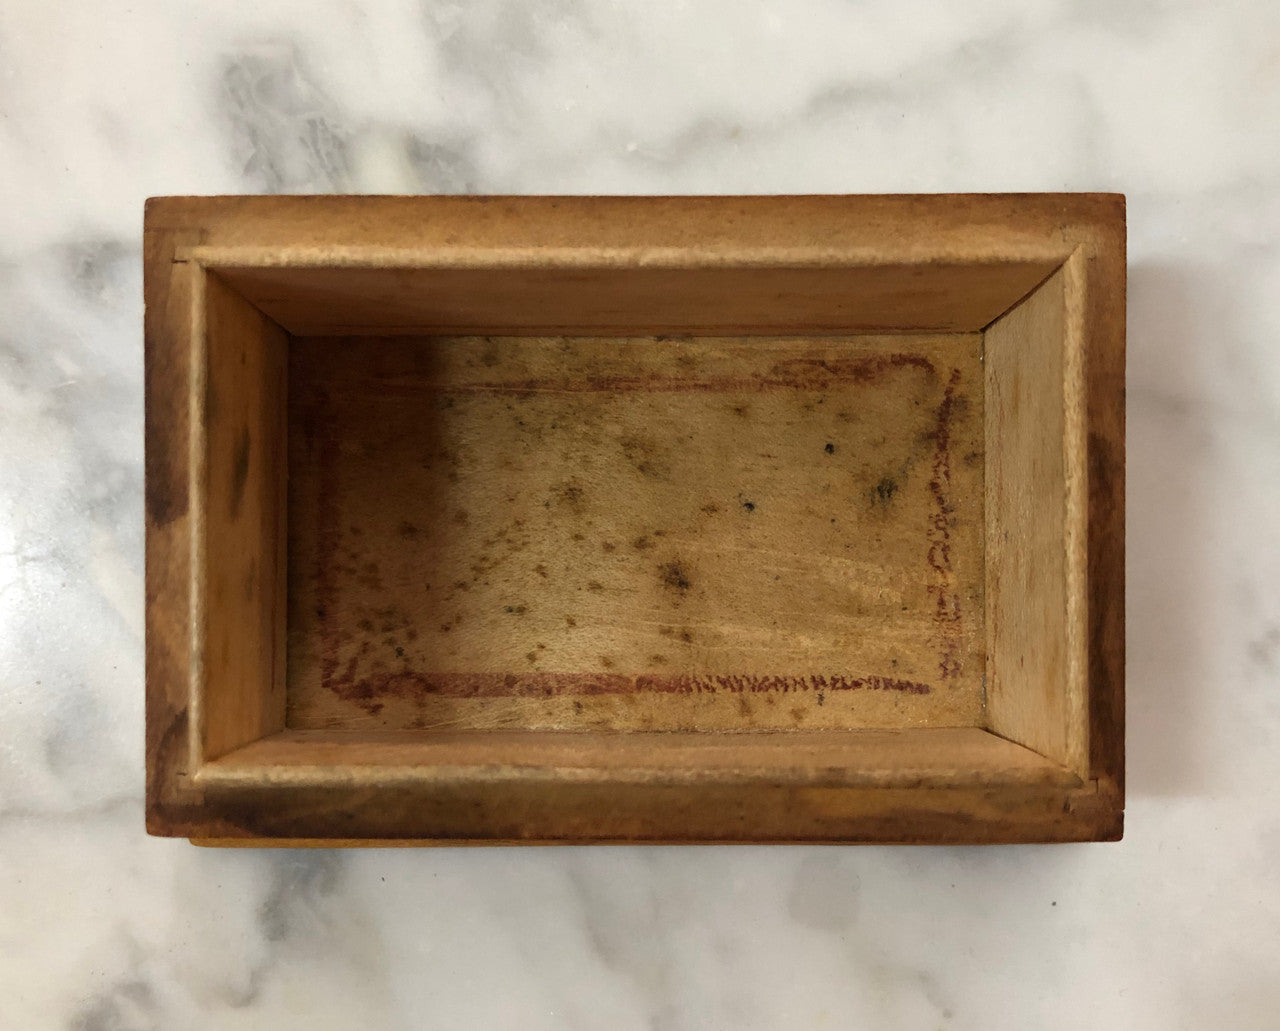 Antique Mauchline Ware Wooden Trinket Box